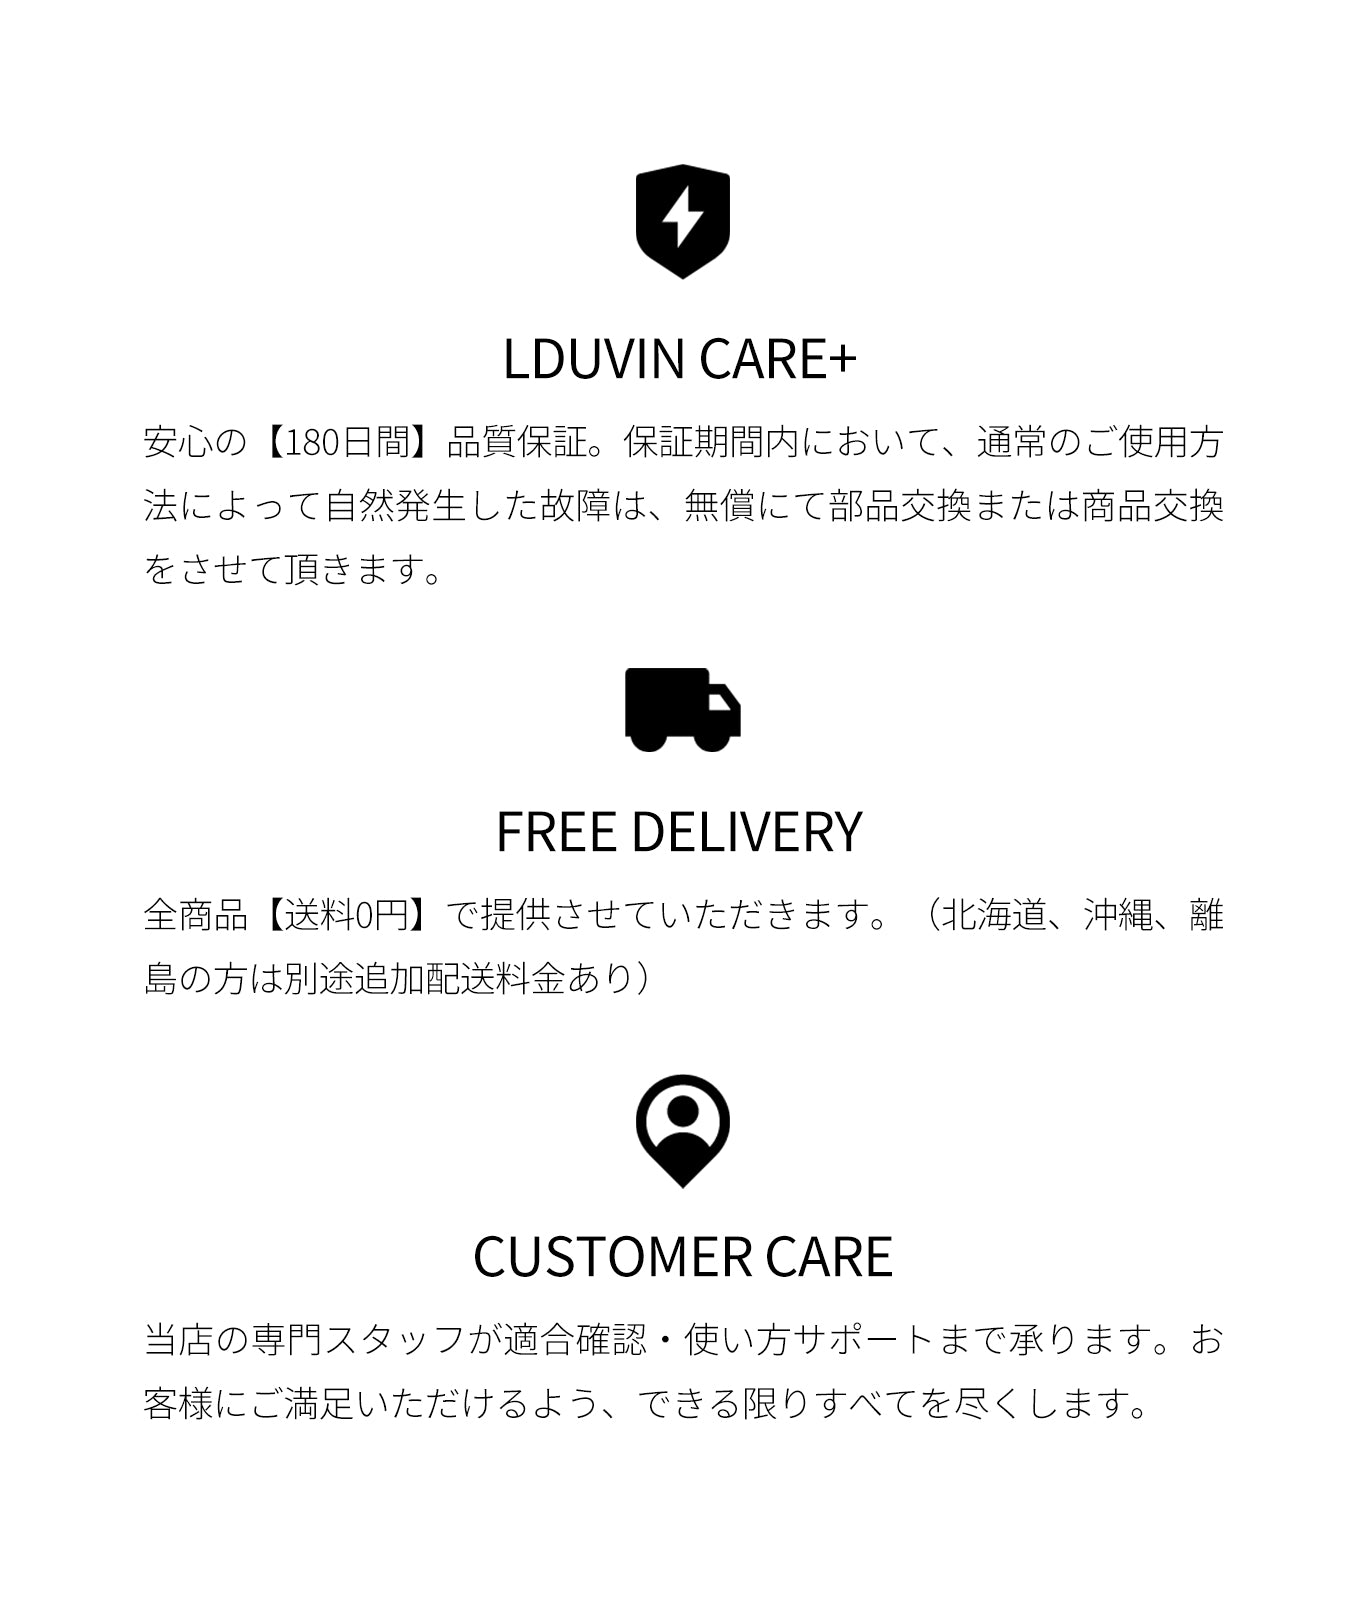 LDUVIN 公式 / 高品質 スーツケース　安心なサポート！180間品質保証と送料無料など！期間内の無償返品・交換を提供します。